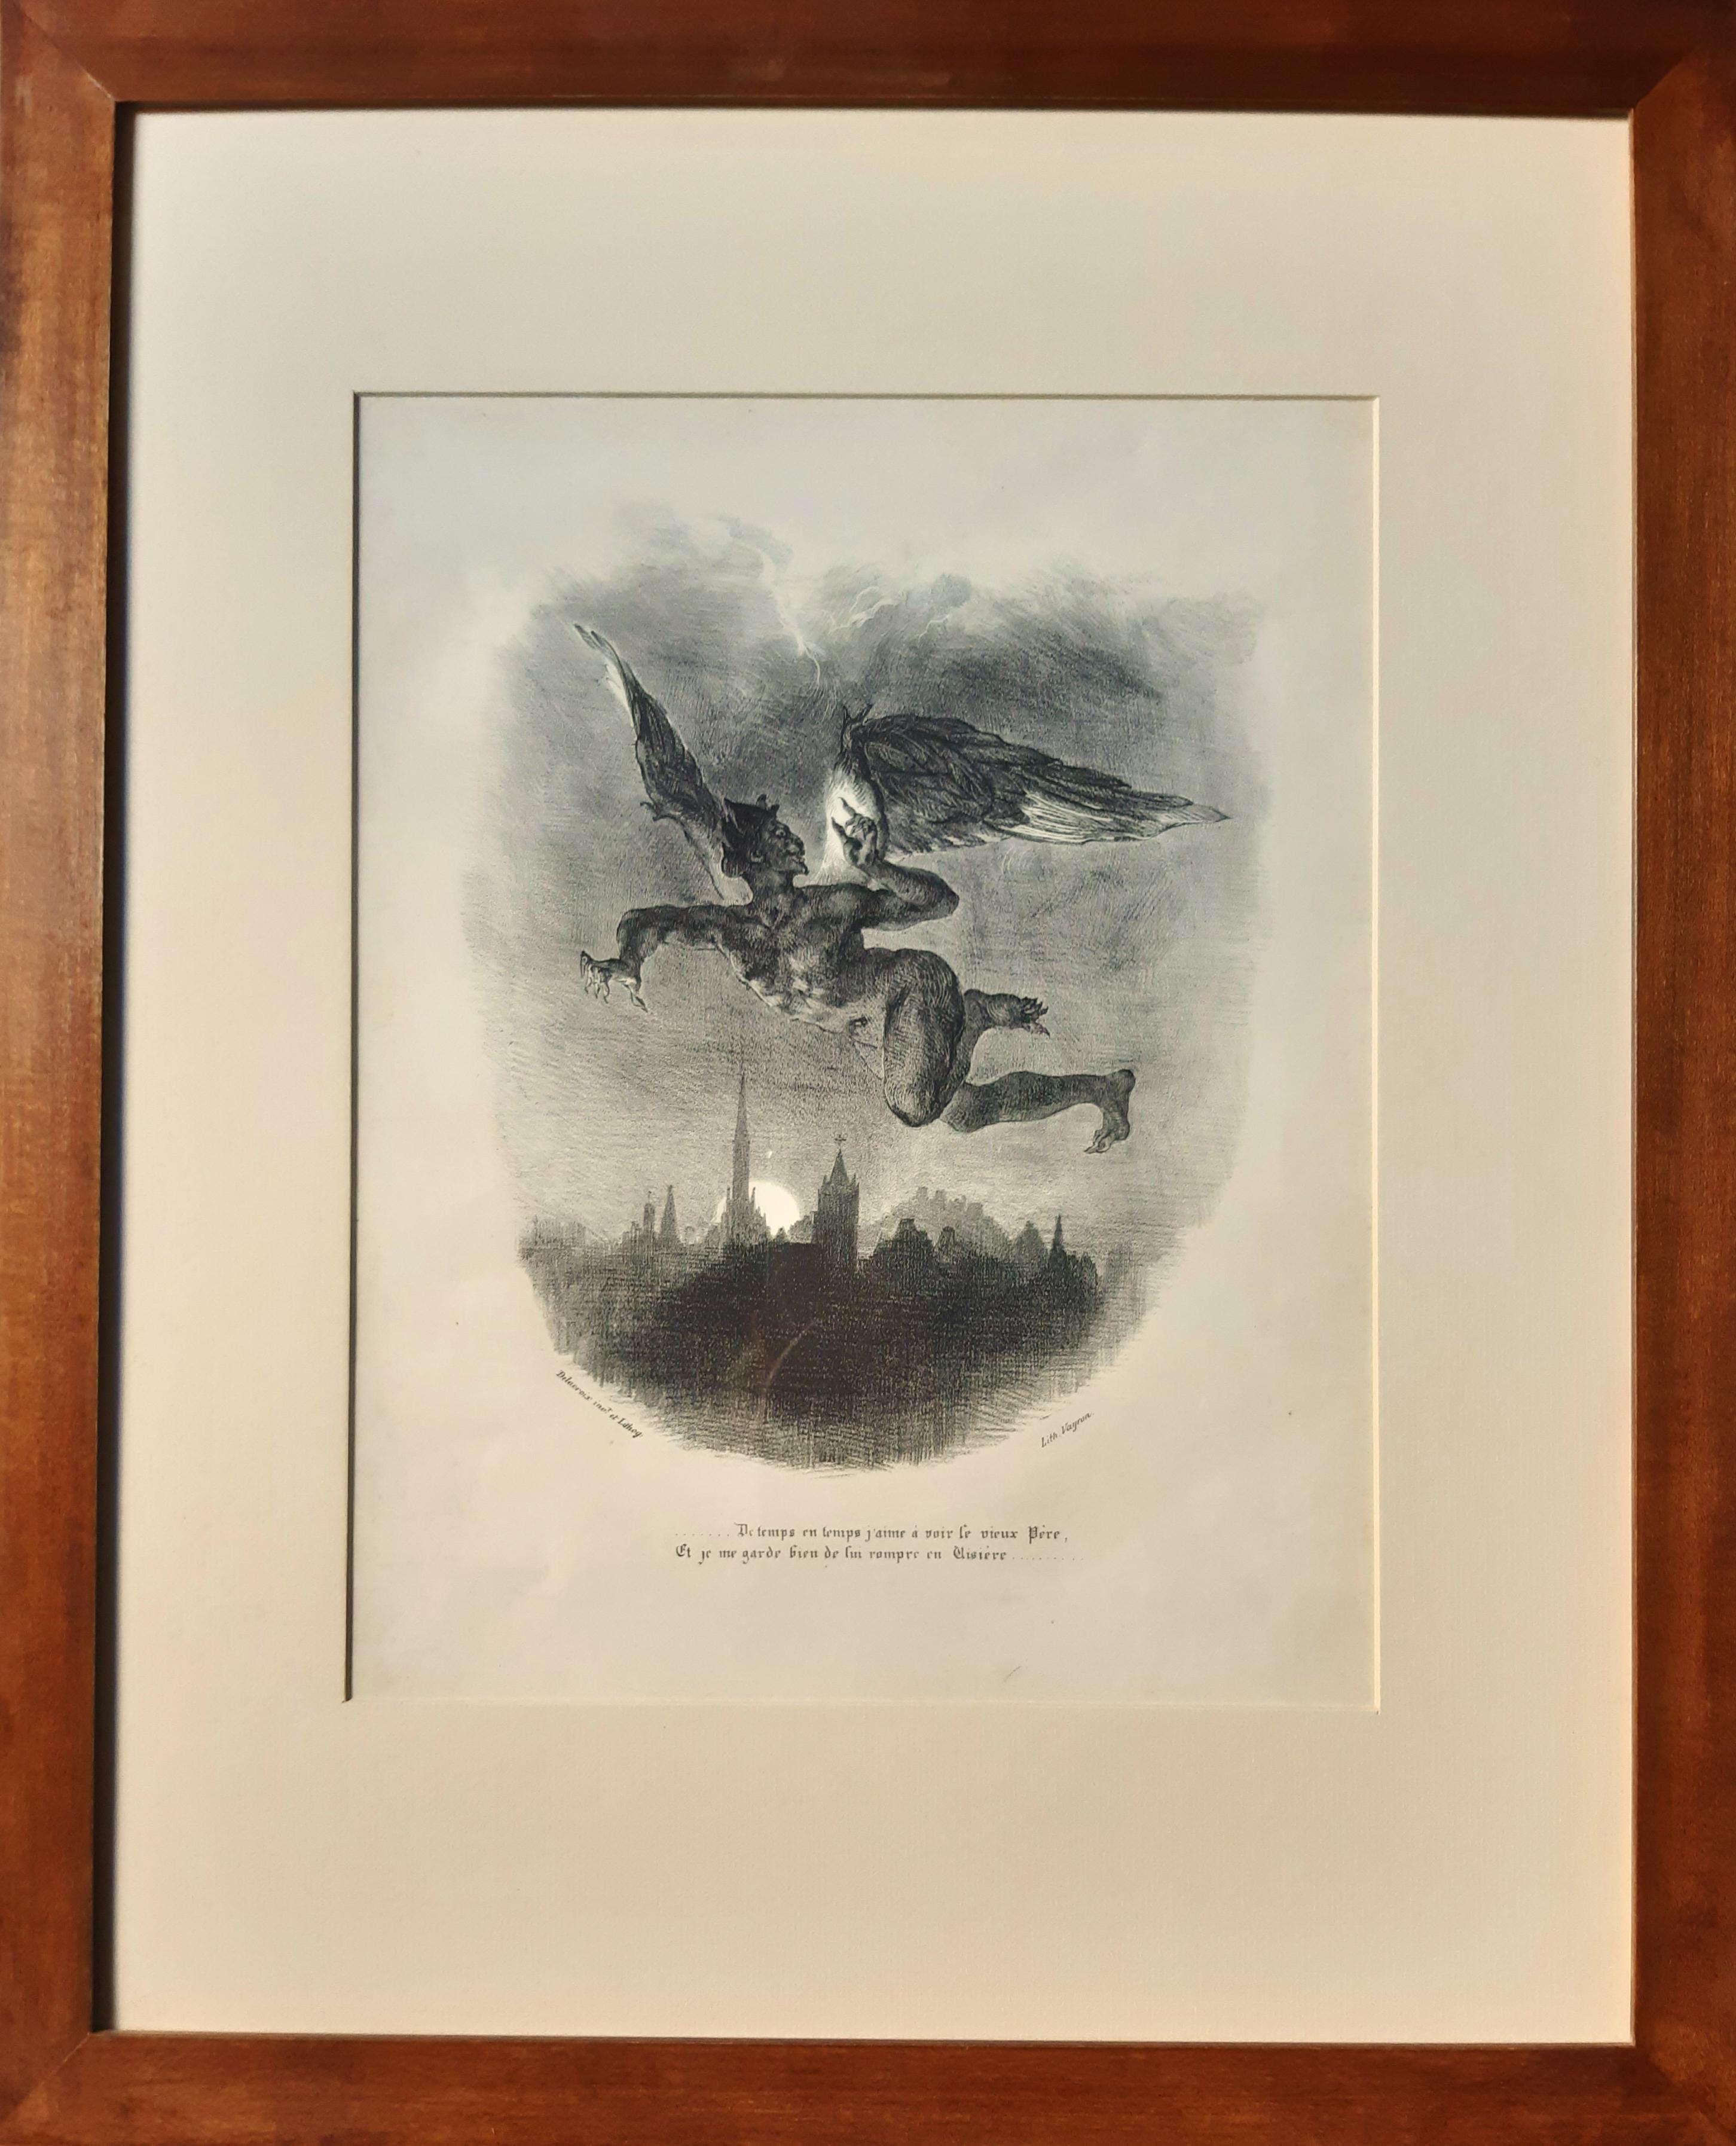 Méphistophélès Dans les Airs - Lithograph by E. Delacroix - 1828 - Print by Eugene Delacroix